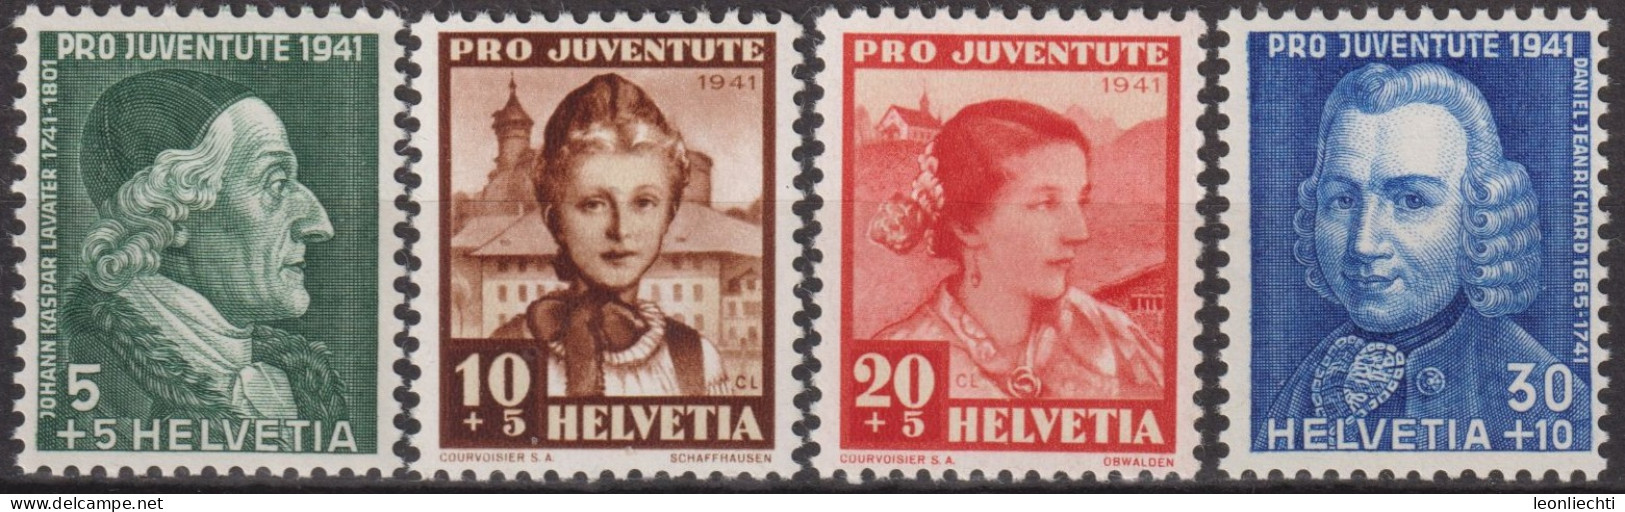 1941 Schweiz Pro Juventute ** Mi:CH 399-402 Yt:CH 371-374, Zum:CH J97-J100, Lavater+Jeanrichards+Trachtenfrauen - Nuevos